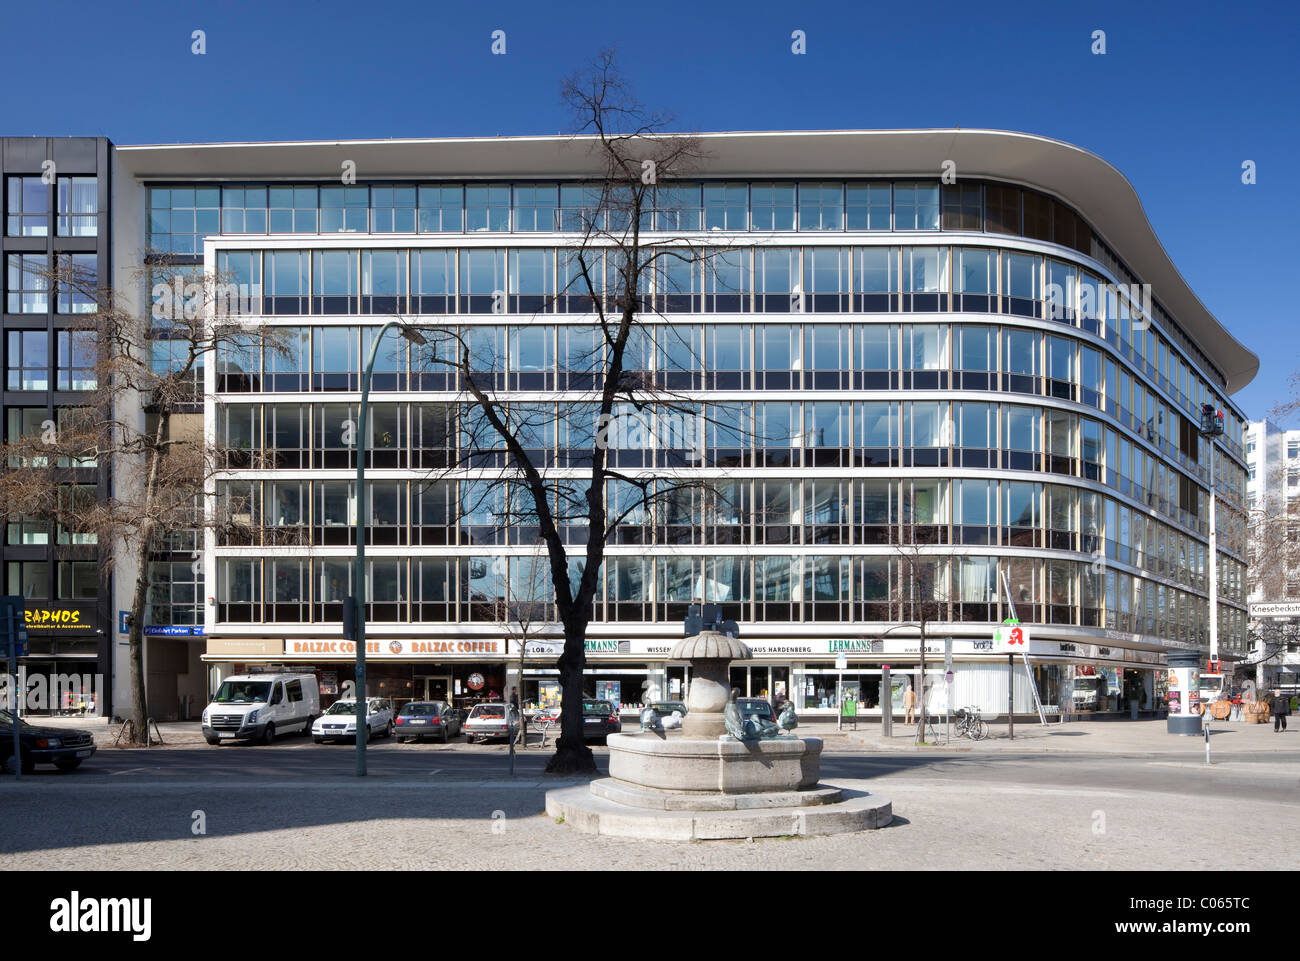 Haus Hardenberg, bureaux et commerces bâtiment, Charlottenburg, Berlin, Germany, Europe Banque D'Images